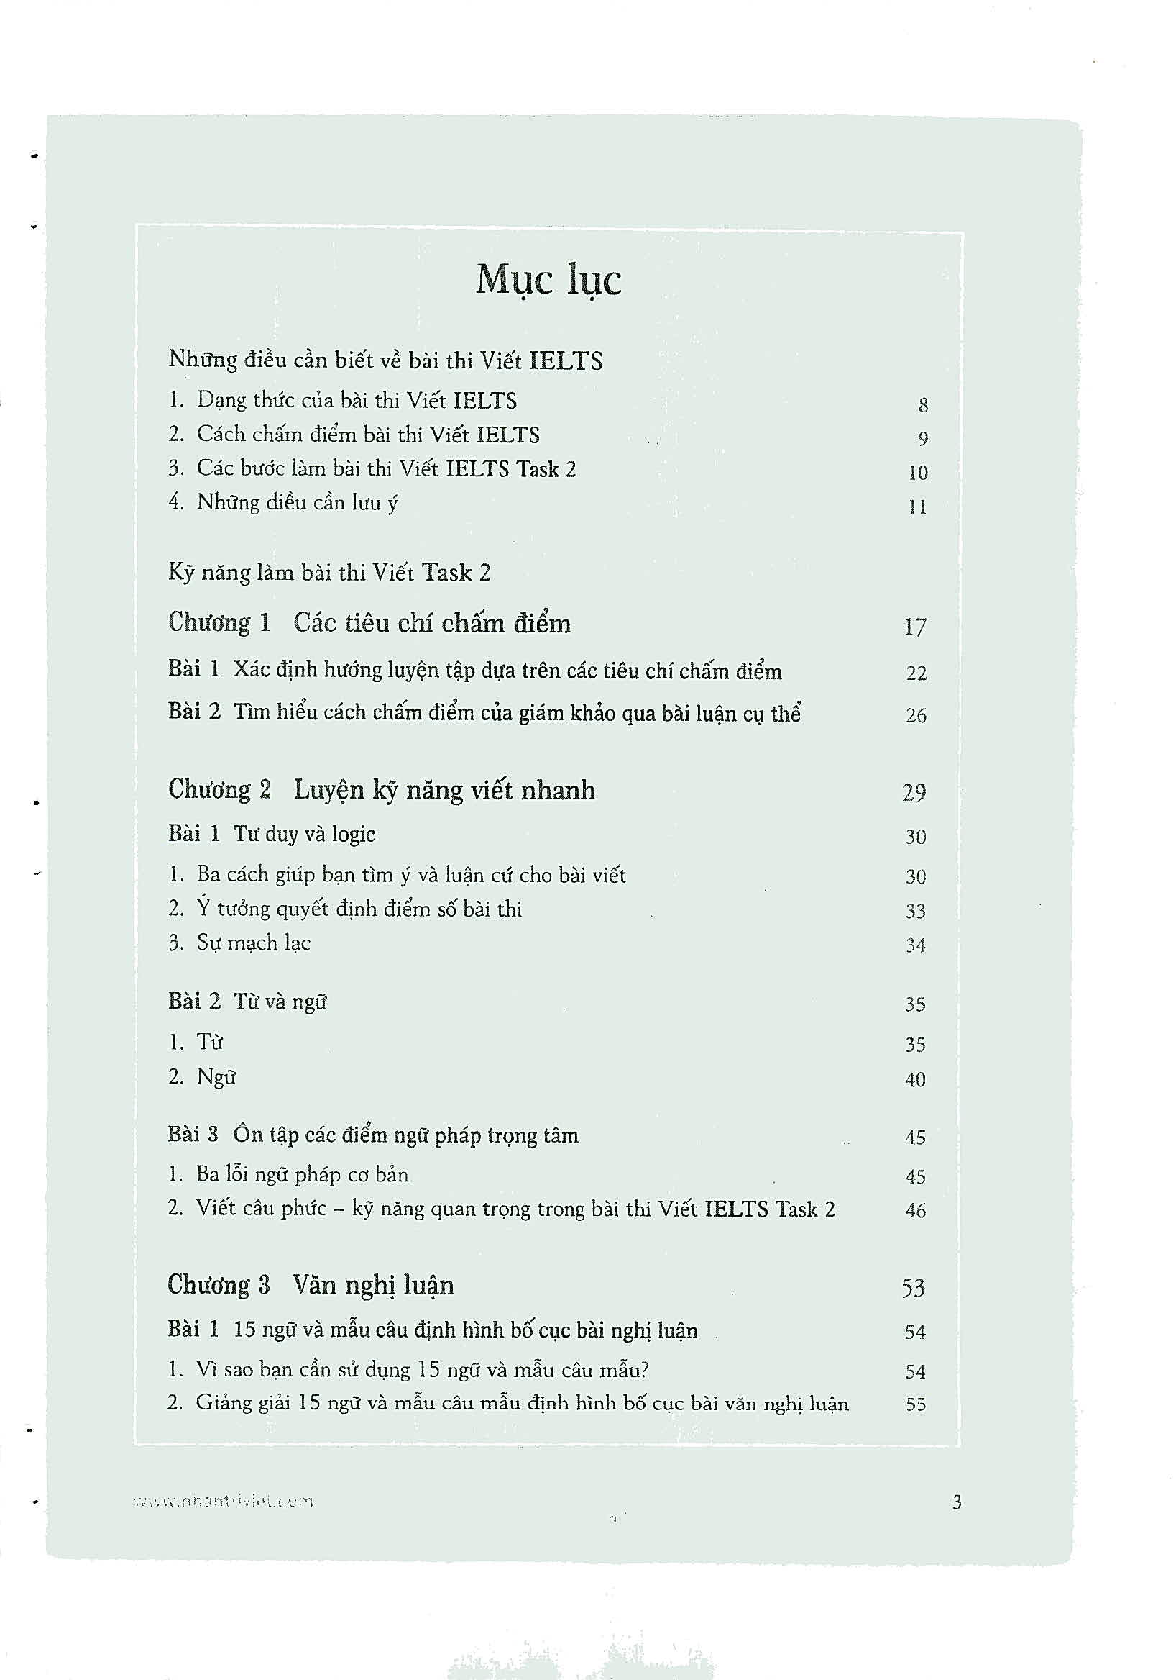 Sách Marvellous Techniques For IELTS Writing | Xem online, tải PDF miễn phí (trang 4)